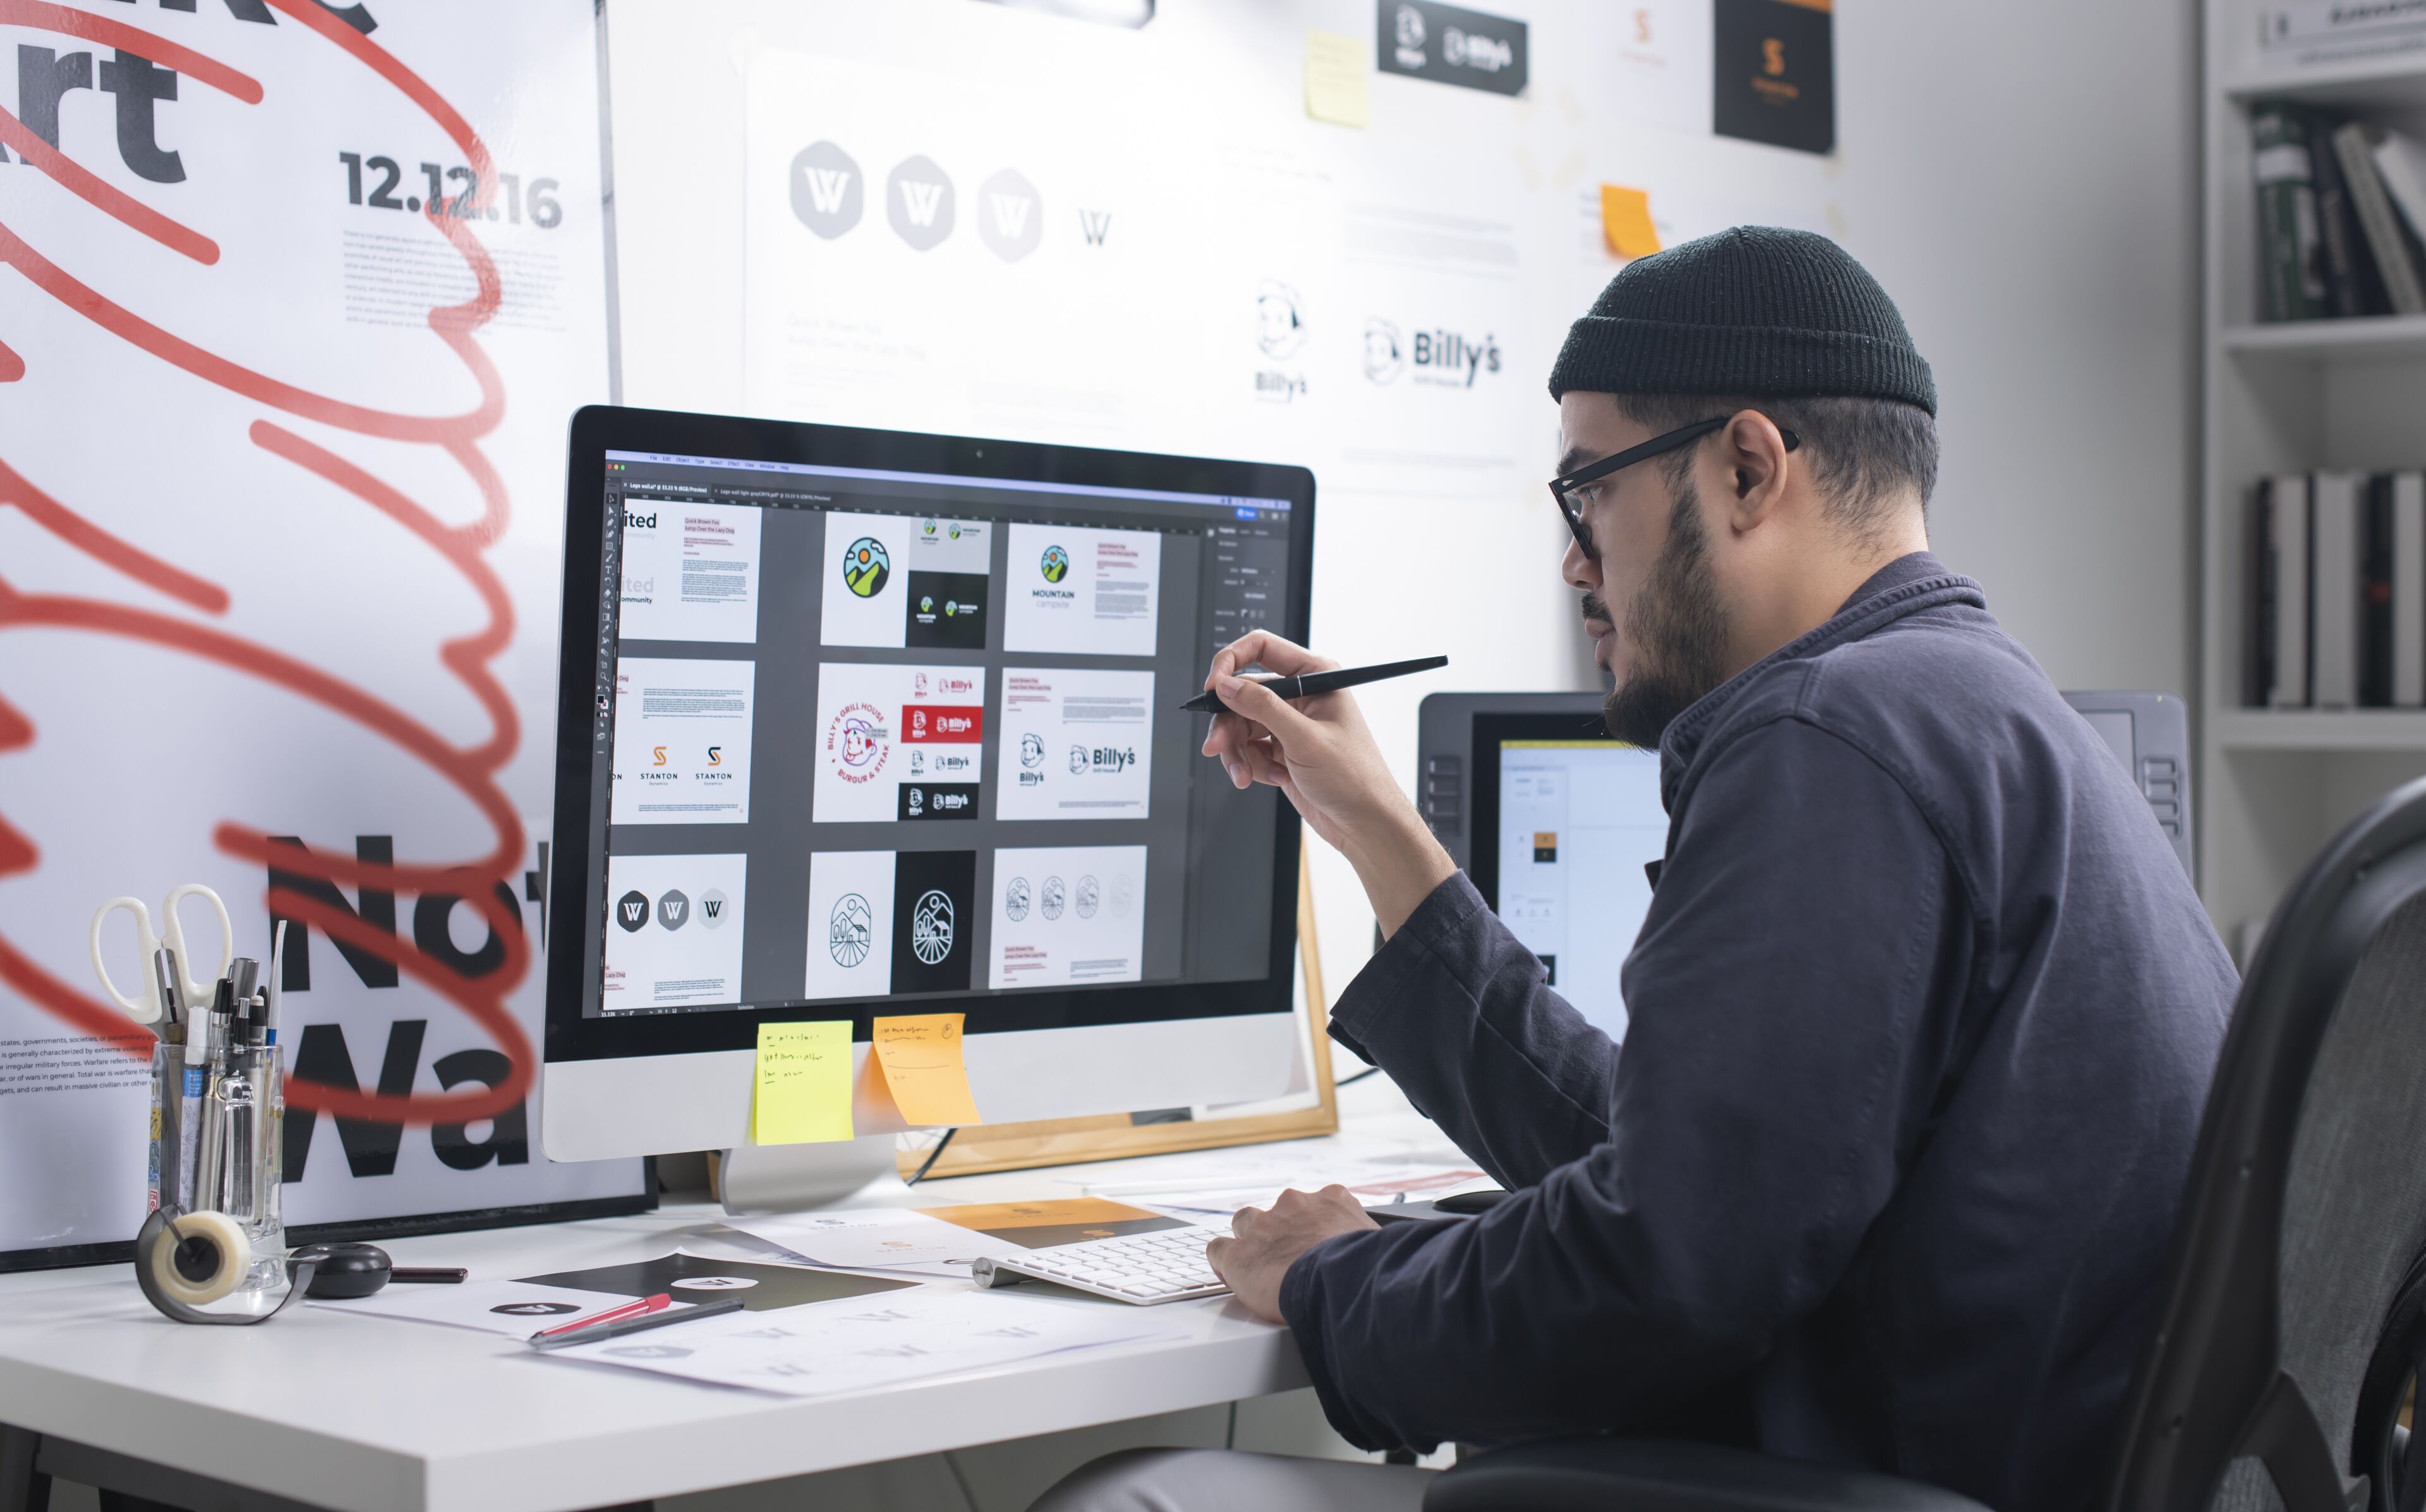 ImageDiseñador gráfico masculino con gorro revisa diseños en un monitor grande, con un lápiz óptico, en un espacio de trabajo ordenado.